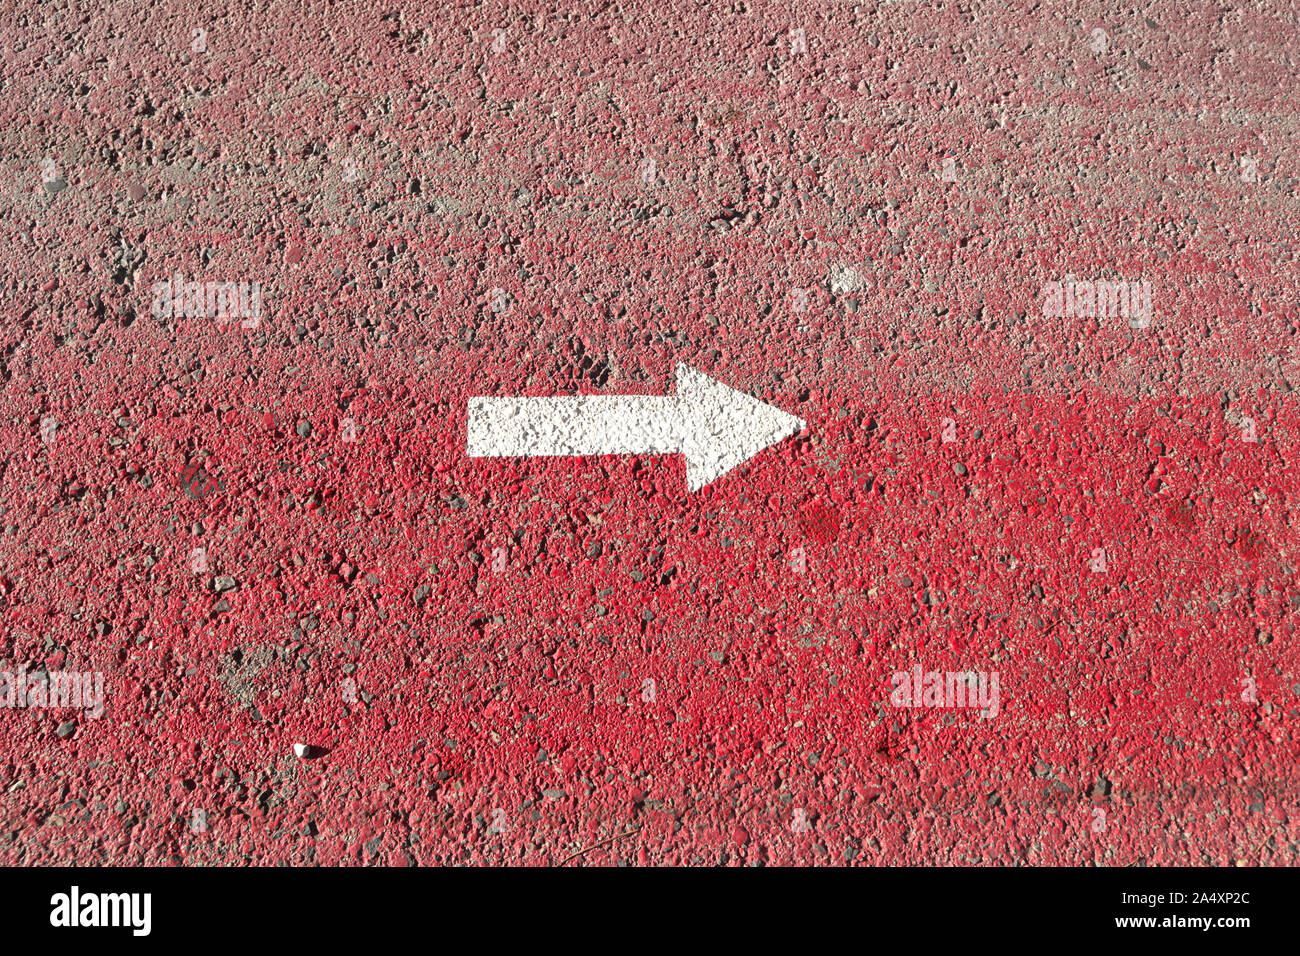 Ein weißer Pfeil zeigt nach rechts auf einem rot lackierten Asphalt Oberfläche Stockfoto